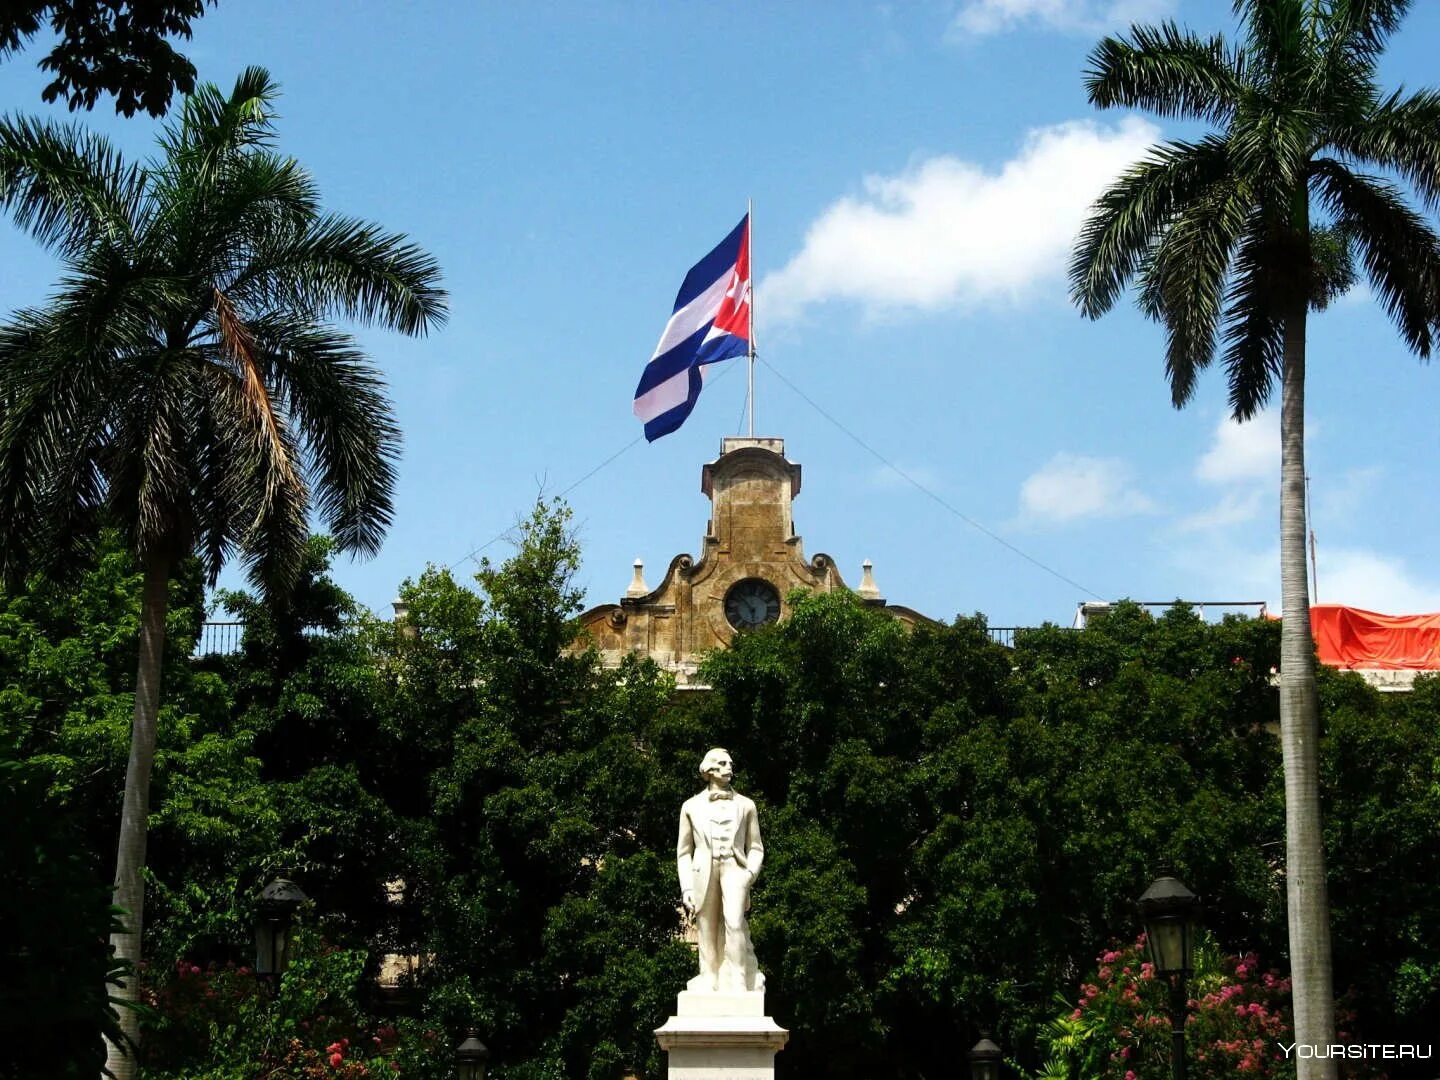 Столица Кубы Гавана. Столица Кубы Гавана достопримечательности. Виньялес Куба Гавана. Куба Гавана памятник.